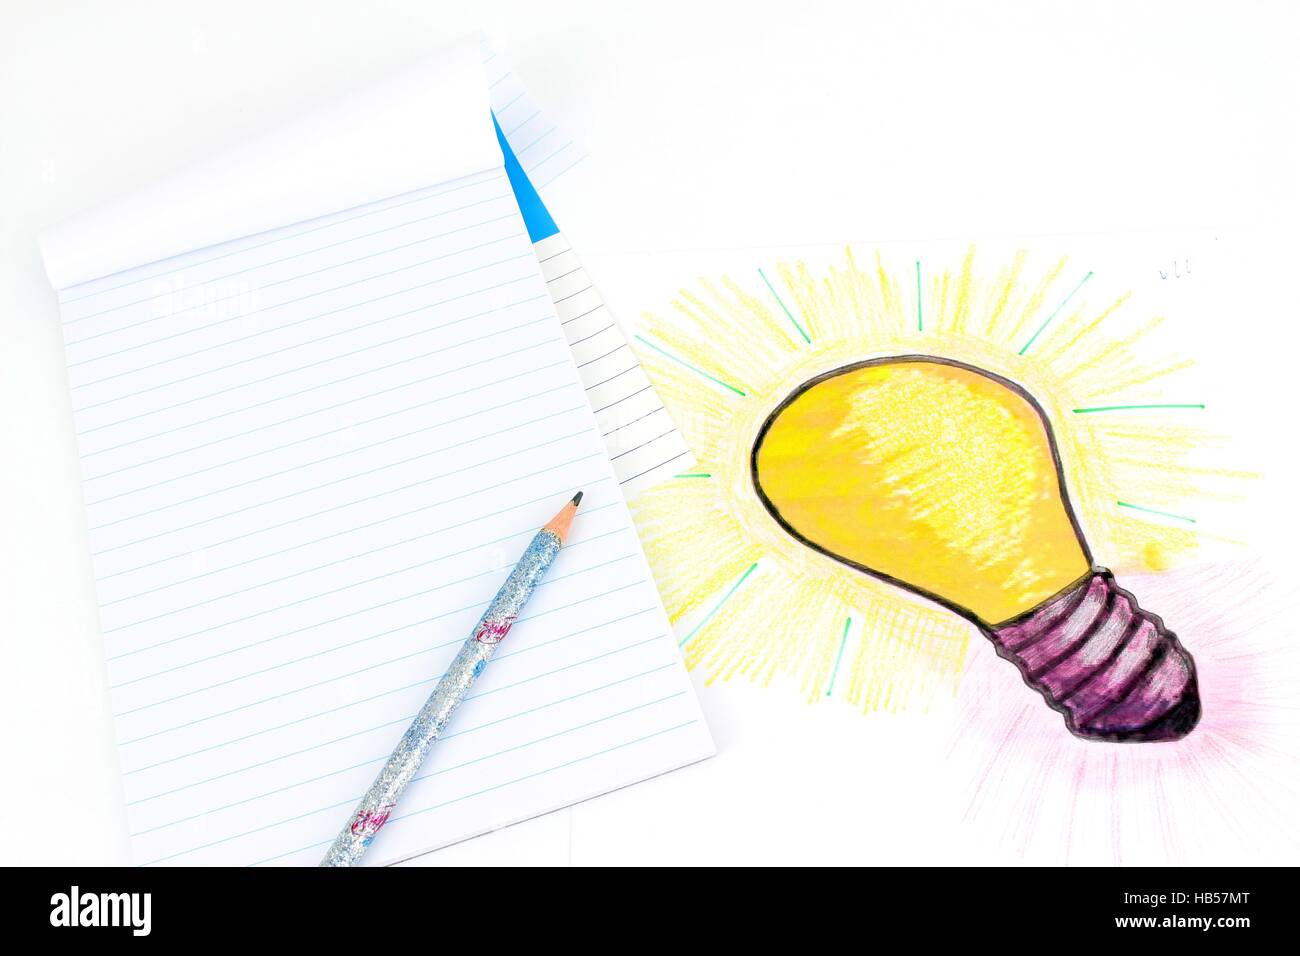 Eine stilisierte Darstellung einer Glühbirne, die auf einem Blatt Papier skizziert wurde. Idee eines Projekts, Zeichnungsobjekte, Berechnung. Stockfoto